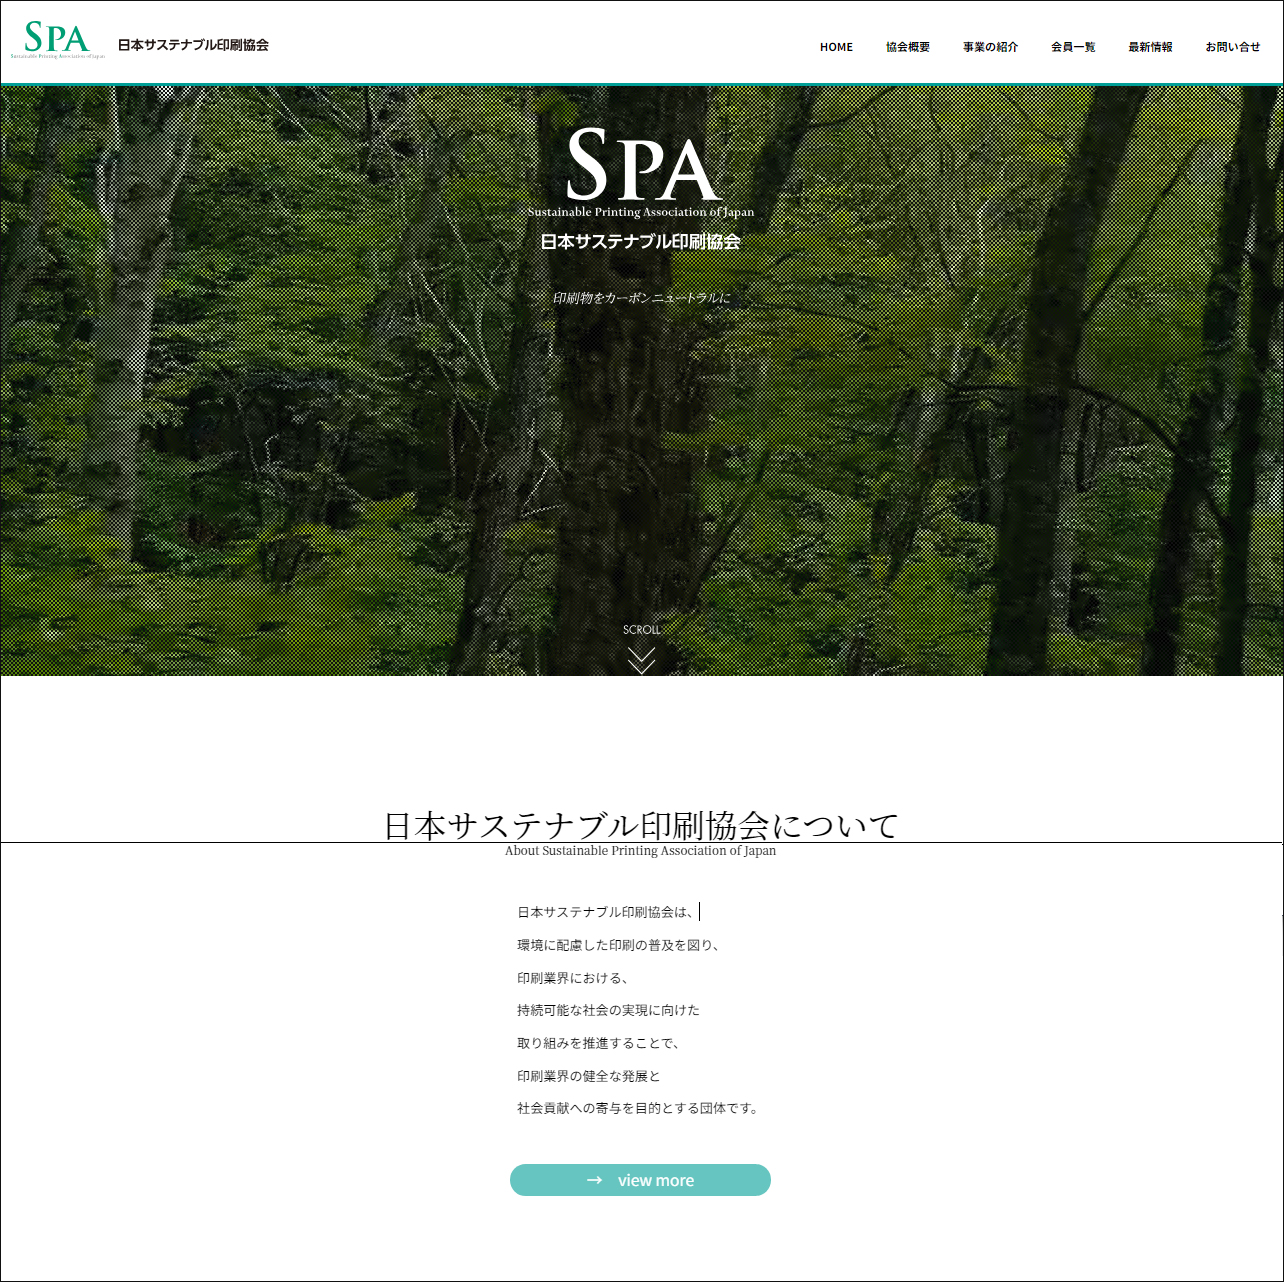 日本サステナブル印刷協会のホームページの画像